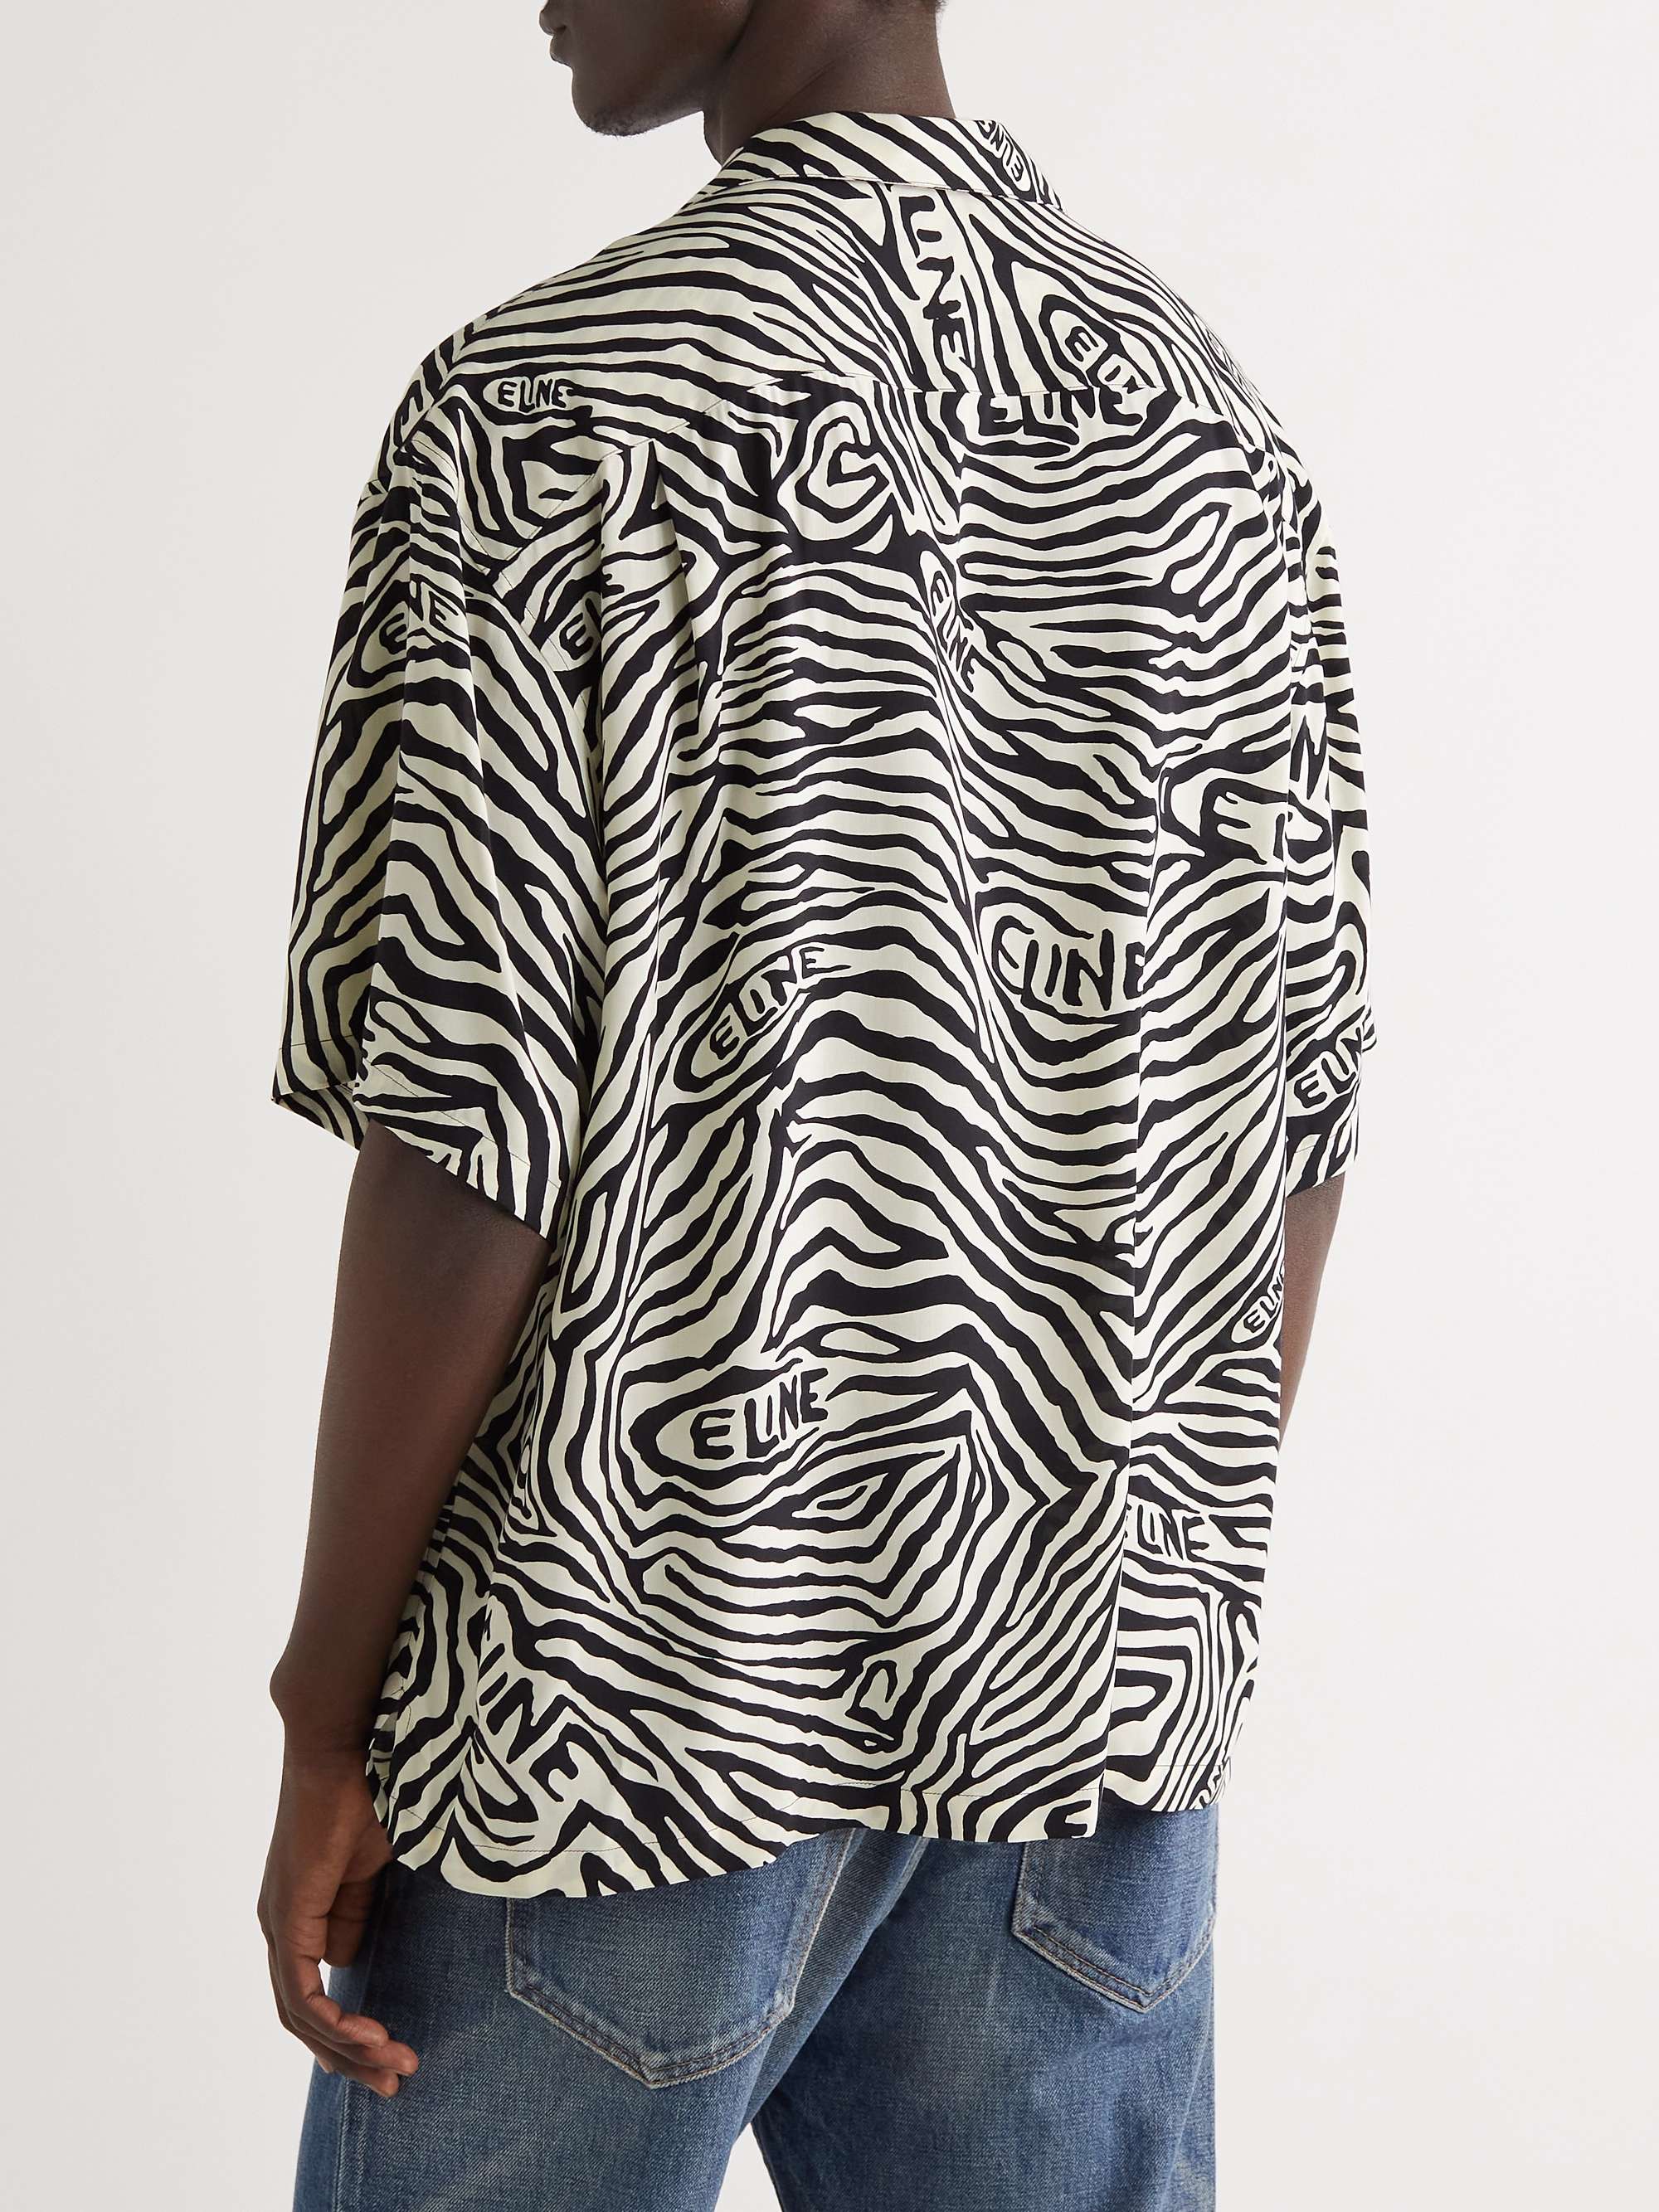 CELINE HOMME Zebra-Print Voile Shirt for Men | MR PORTER